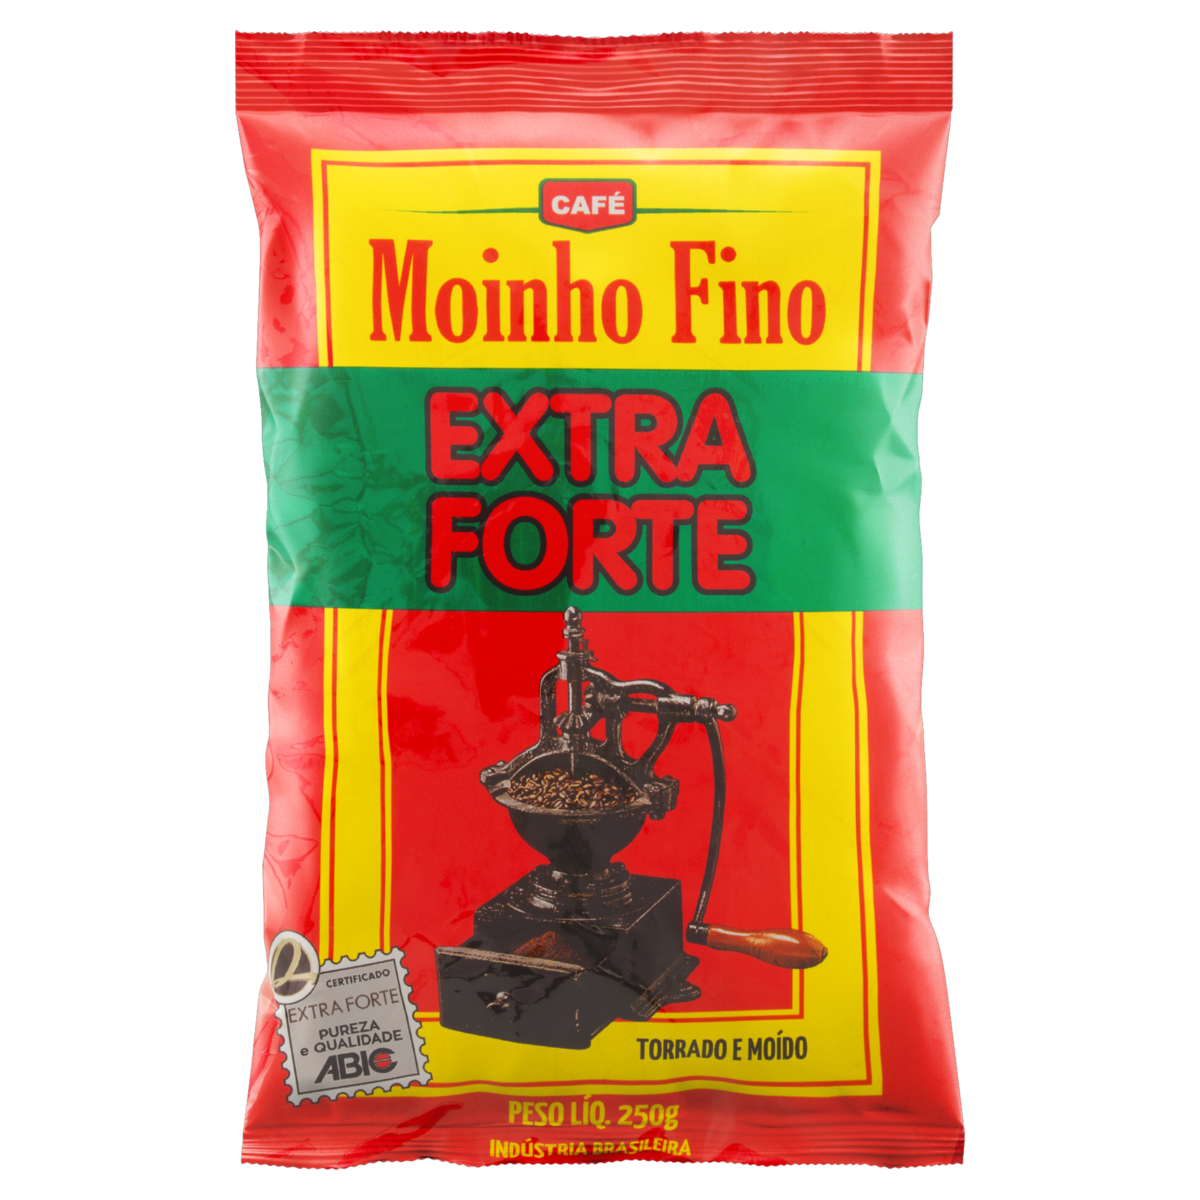 7896678100127 - CAFÉ TORRADO E MOÍDO EXTRAFORTE MOINHO FINO PACOTE 250G